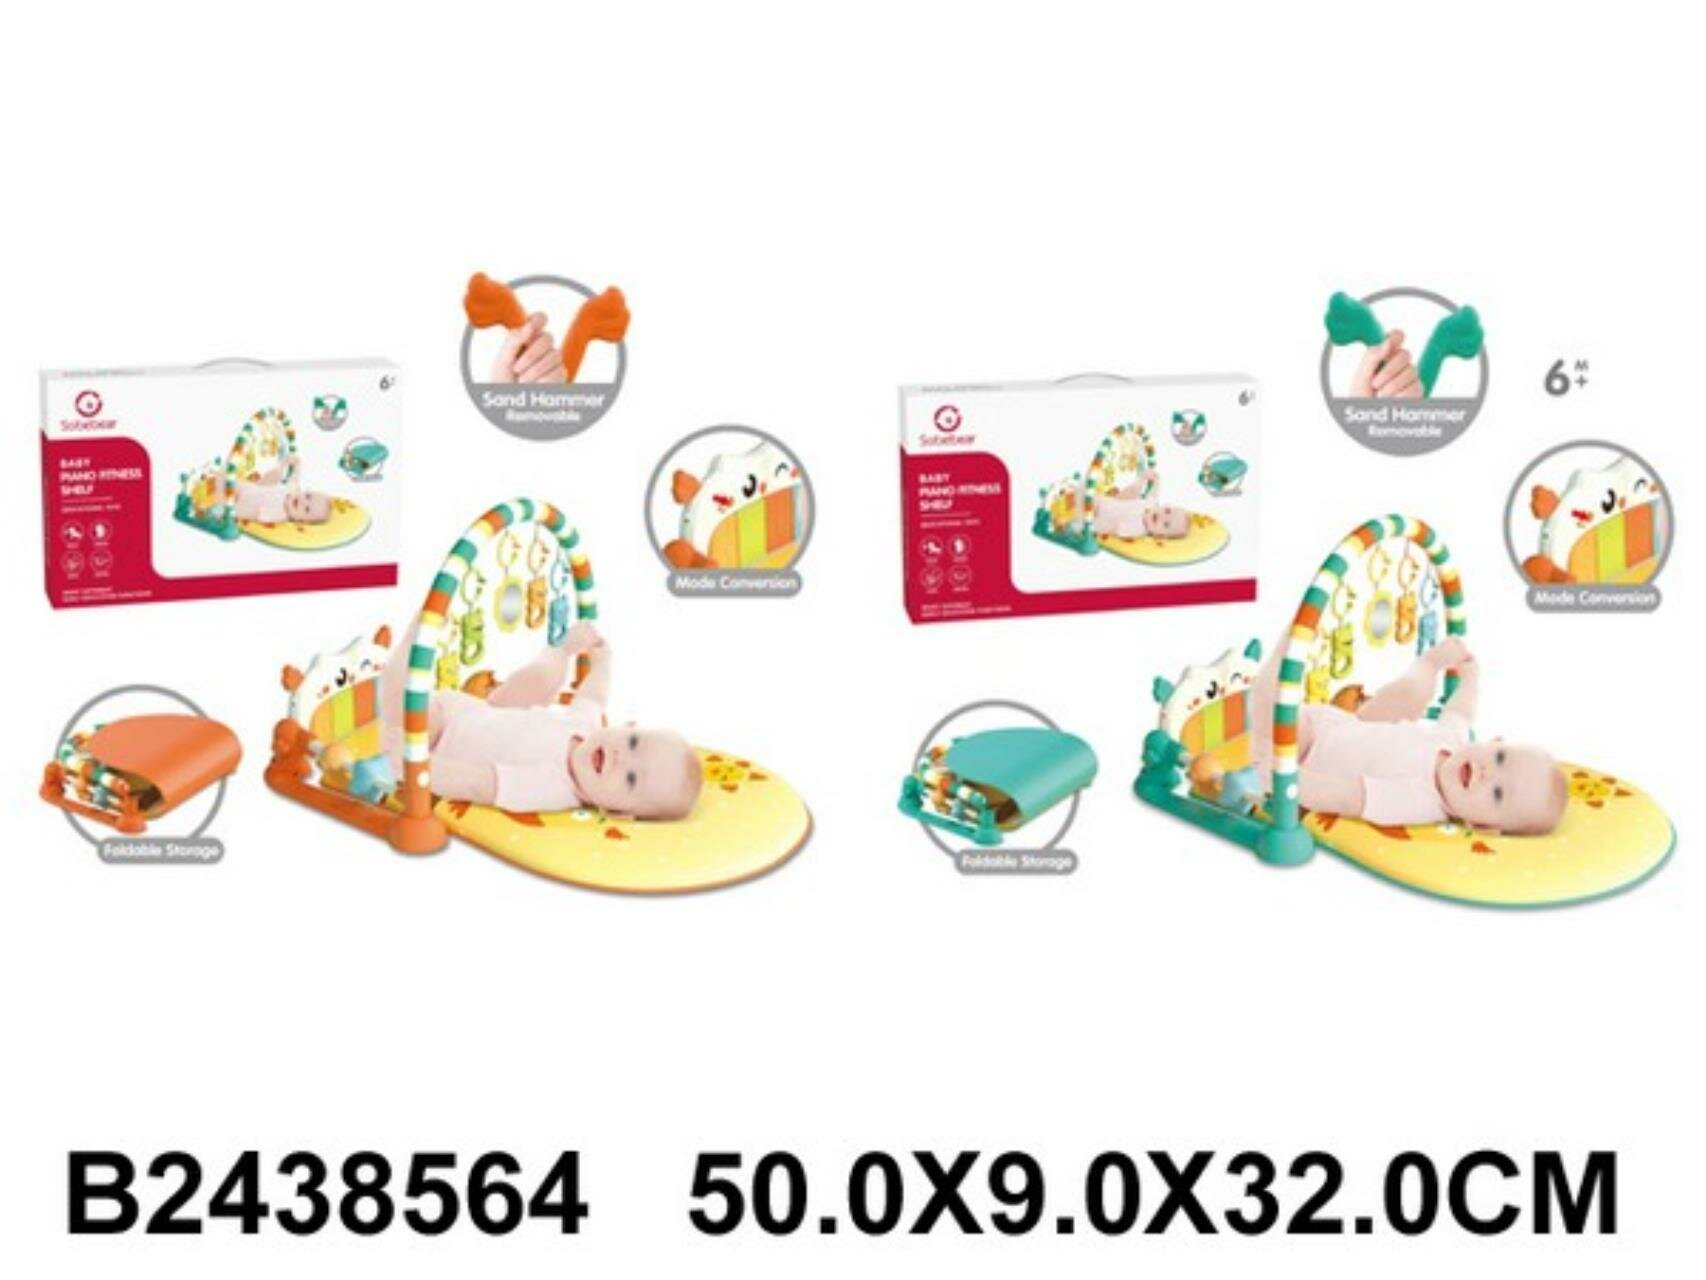 Коврик развивающий мягкий, 5 подвесных игрушек, яркие цвета, пианино, в к 50x9x32 см